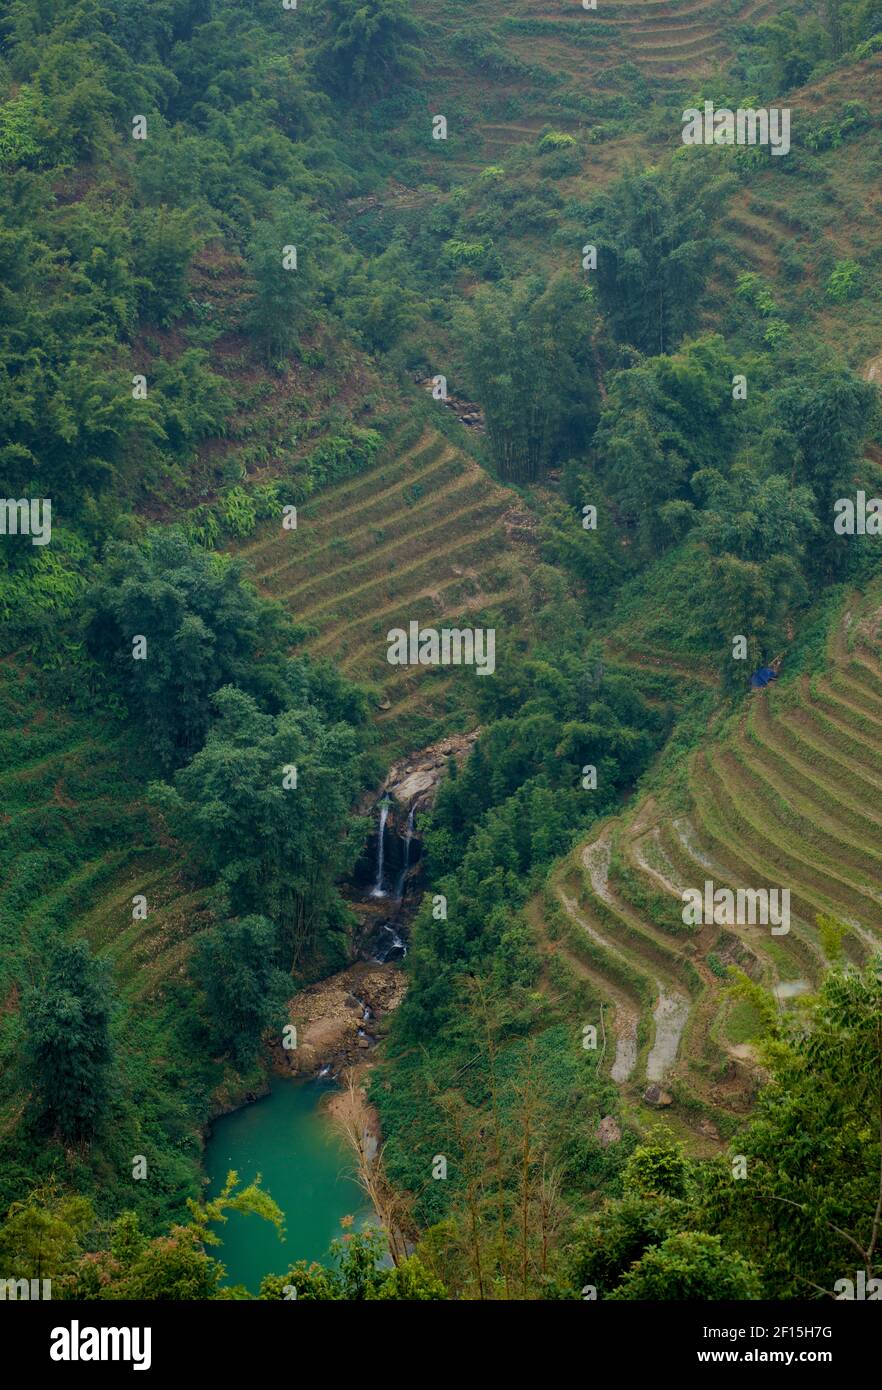 Ländliche Landschaft von Tal mit Wasserfall unten, umgeben von tsteep, terrassenförmig Feilds. Sapa Gebiet, Lao Cai Provinz, Nordvietnam Stockfoto